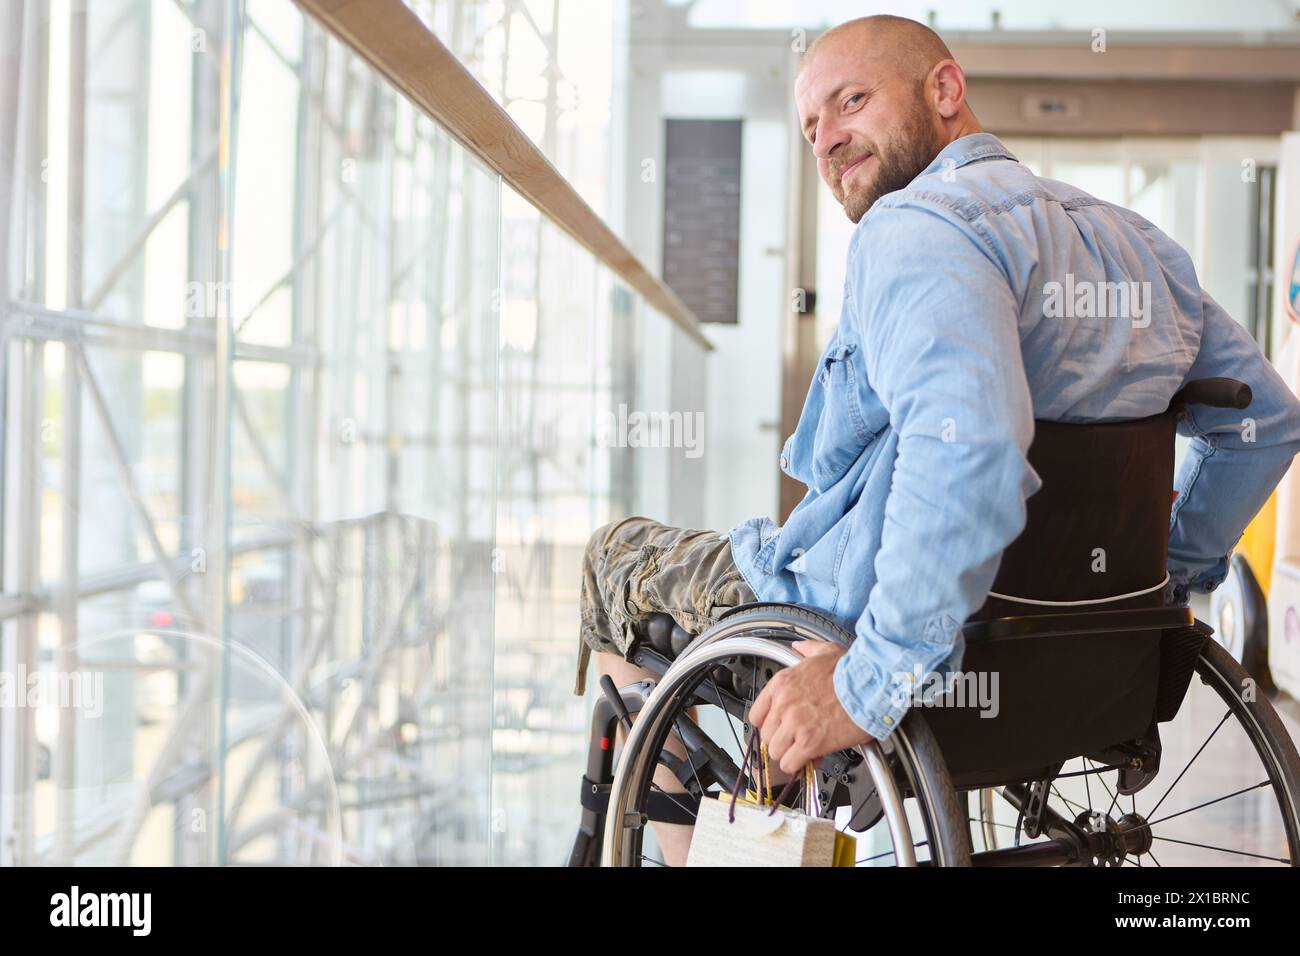 Una persona che utilizza una sedia a rotelle è ritratta sorridendo calorosamente in un edificio moderno e ben illuminato, che mostra un momento di gioia e accessibilità. Foto Stock